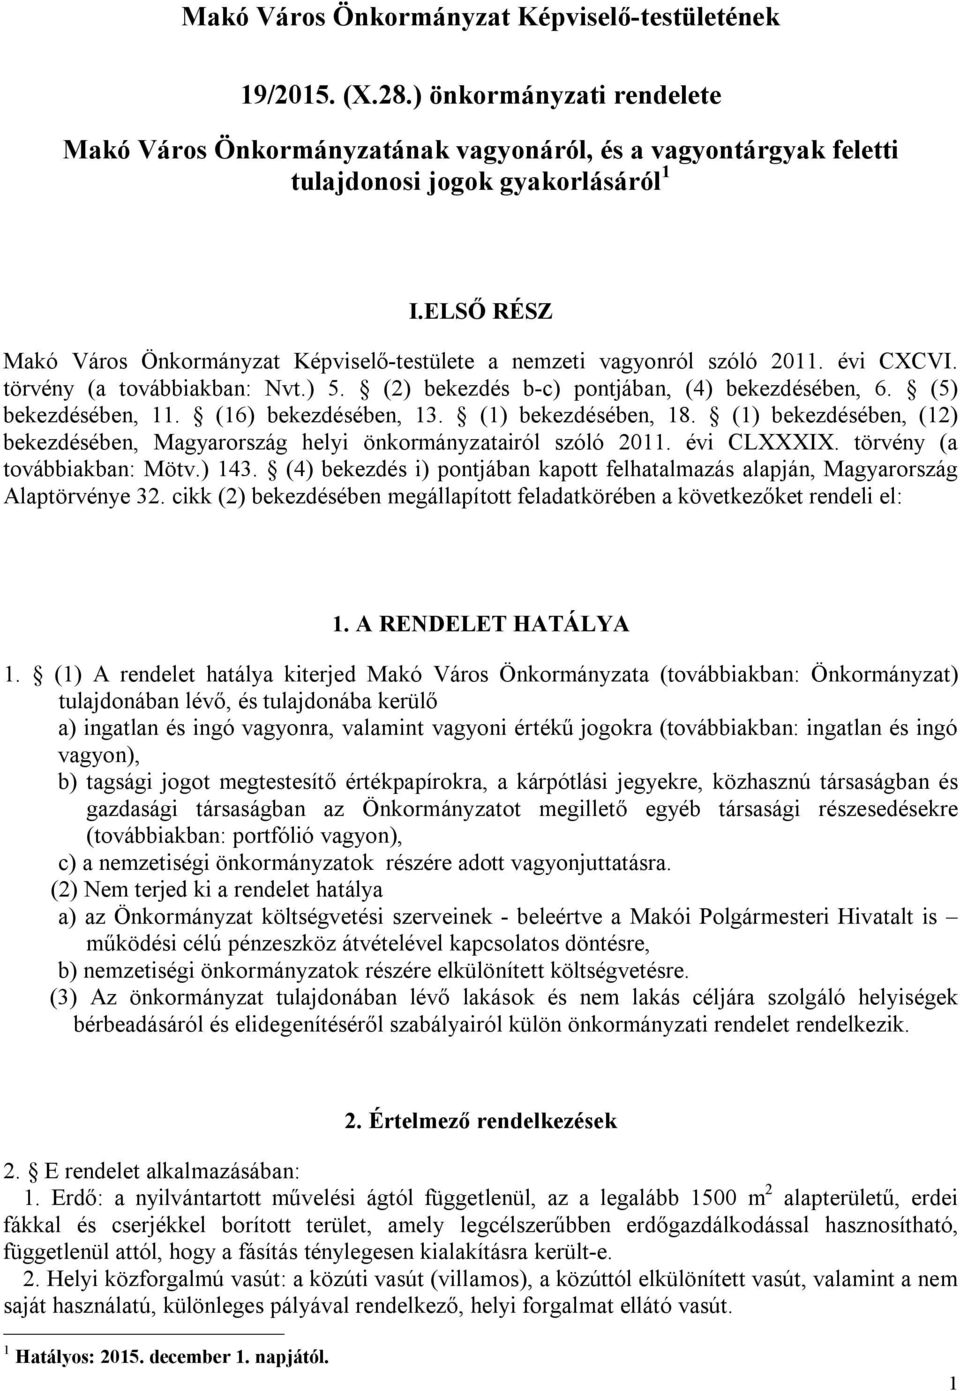 (5) bekezdésében, 11. (16) bekezdésében, 13. (1) bekezdésében, 18. (1) bekezdésében, (12) bekezdésében, Magyarország helyi önkormányzatairól szóló 2011. évi CLXXXIX. törvény (a továbbiakban: Mötv.